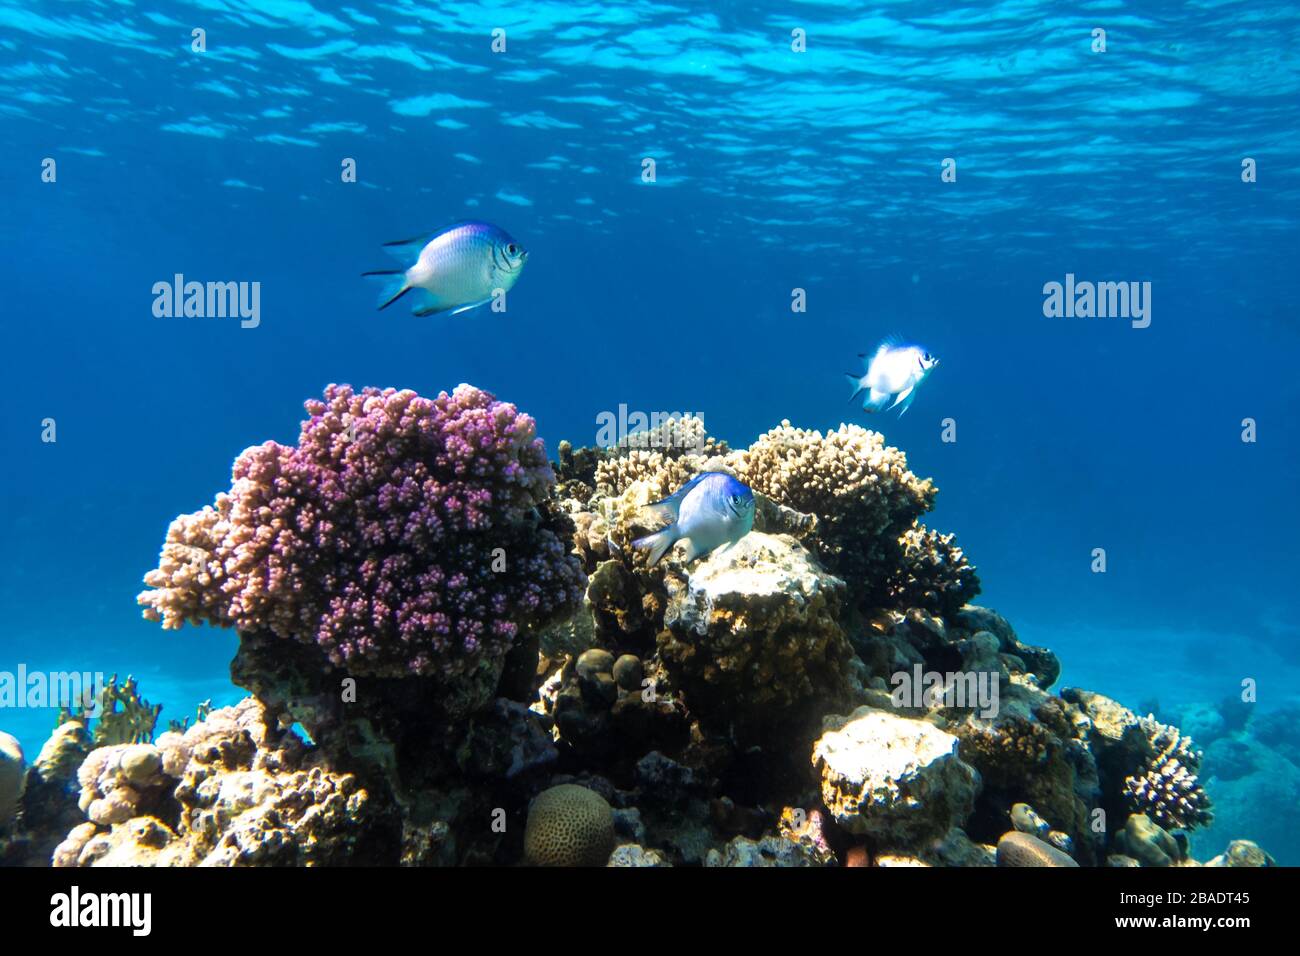 Tropischer Fisch Im Ozean. Schöner Silber-Mondfisch (Moony, Monodactylida) Im Roten Meer Nahe Dem Korallenriffe. Lila Harte Korallen, Unterwasservielfalt Stockfoto